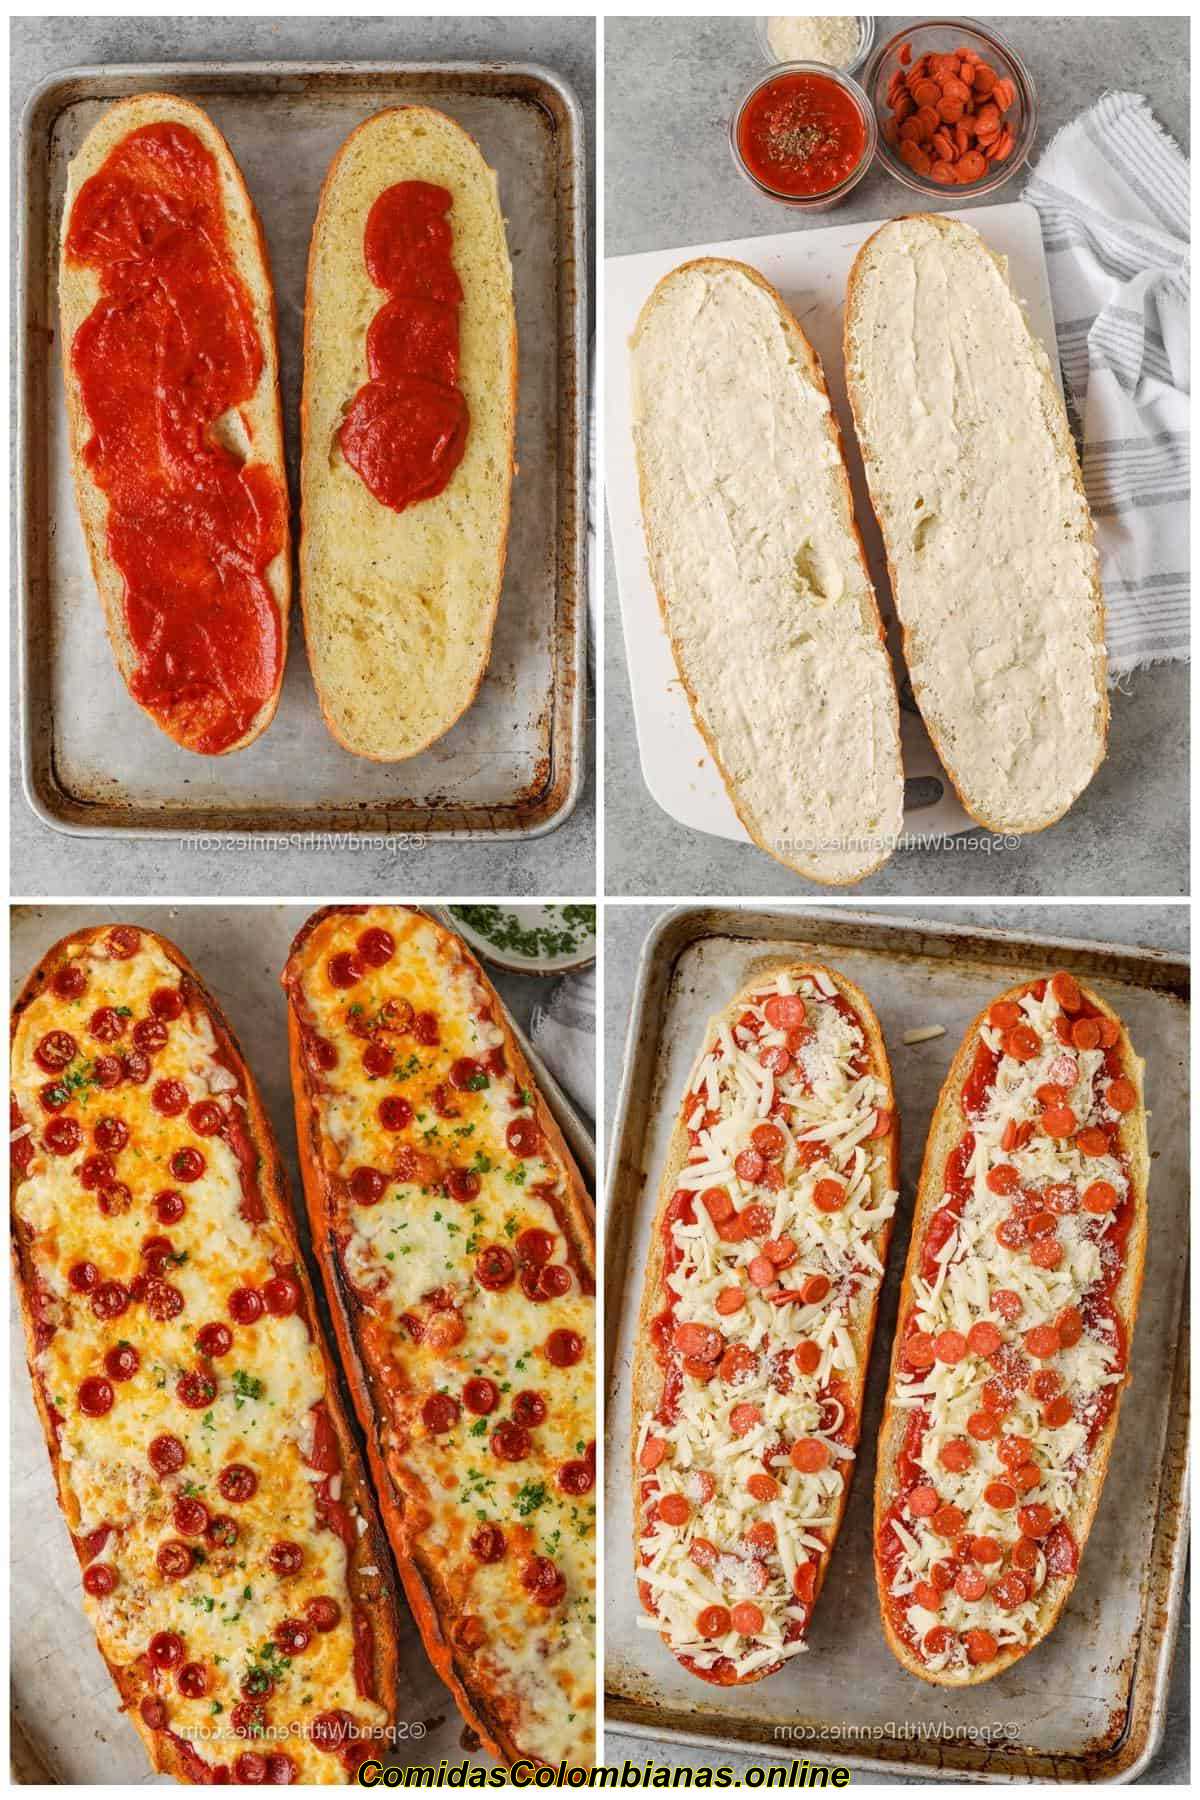 processo de adicionar ingredientes e cozinhar pizza de pão francês